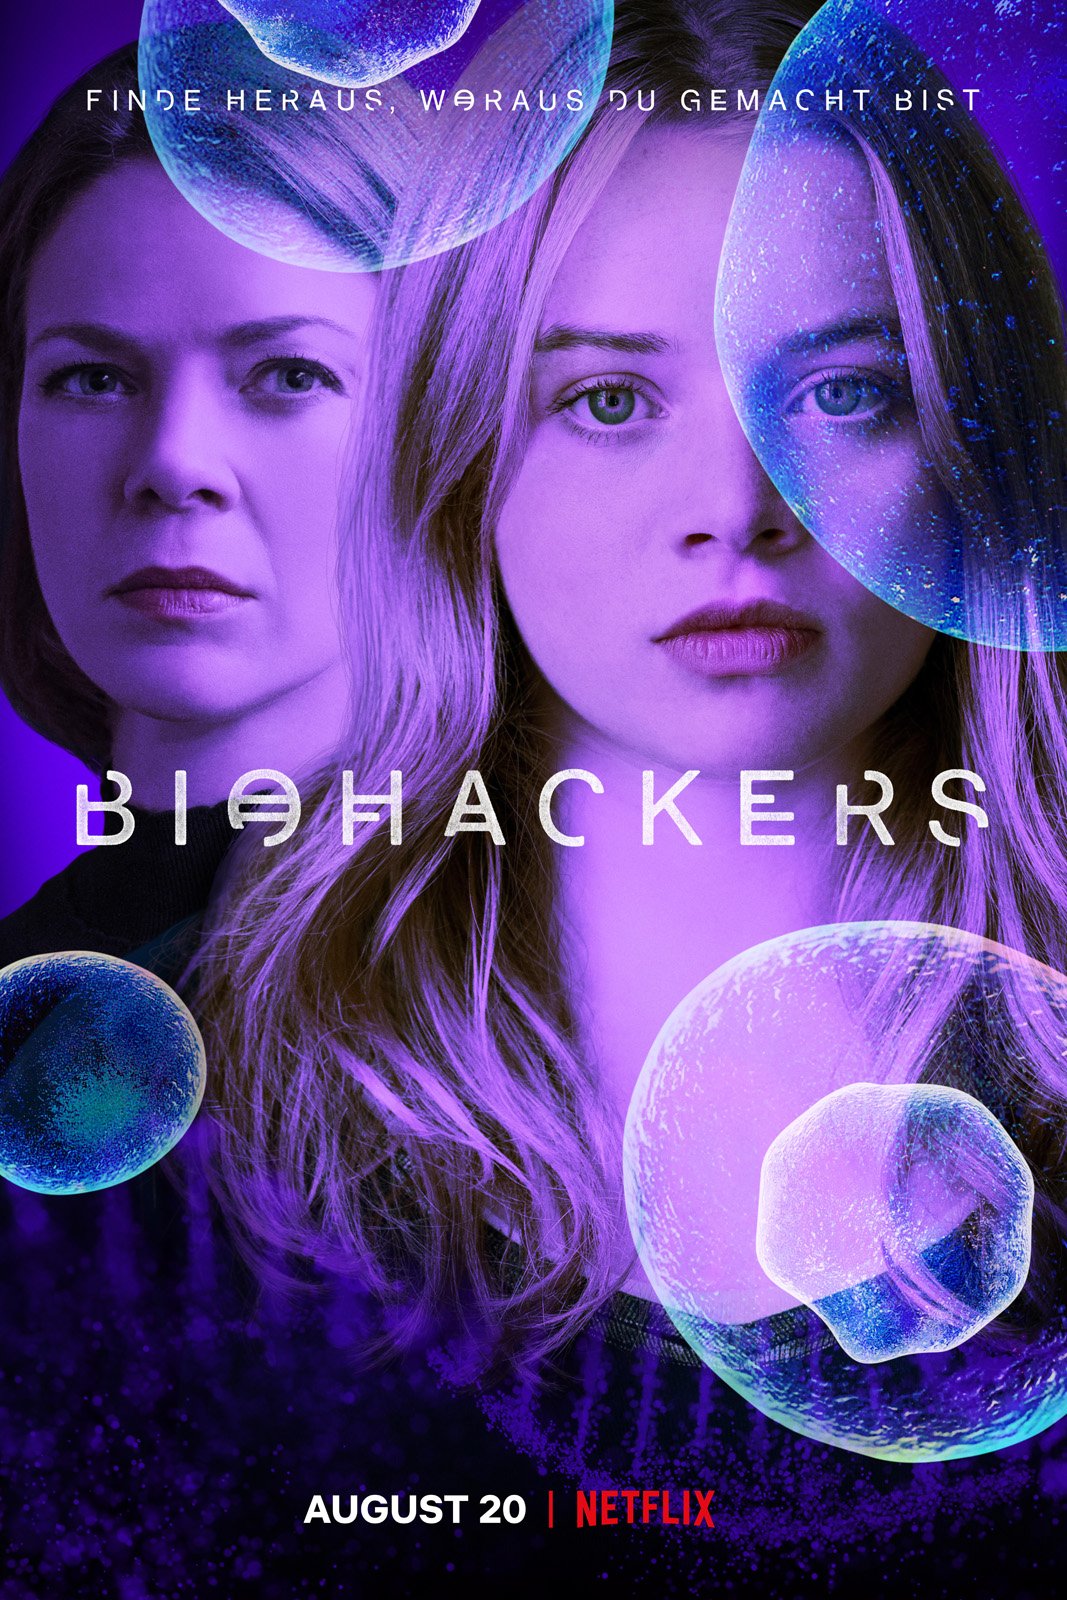 [心得] 生化災駭 Biohackers S01 (雷) Netflix 德國大學劇